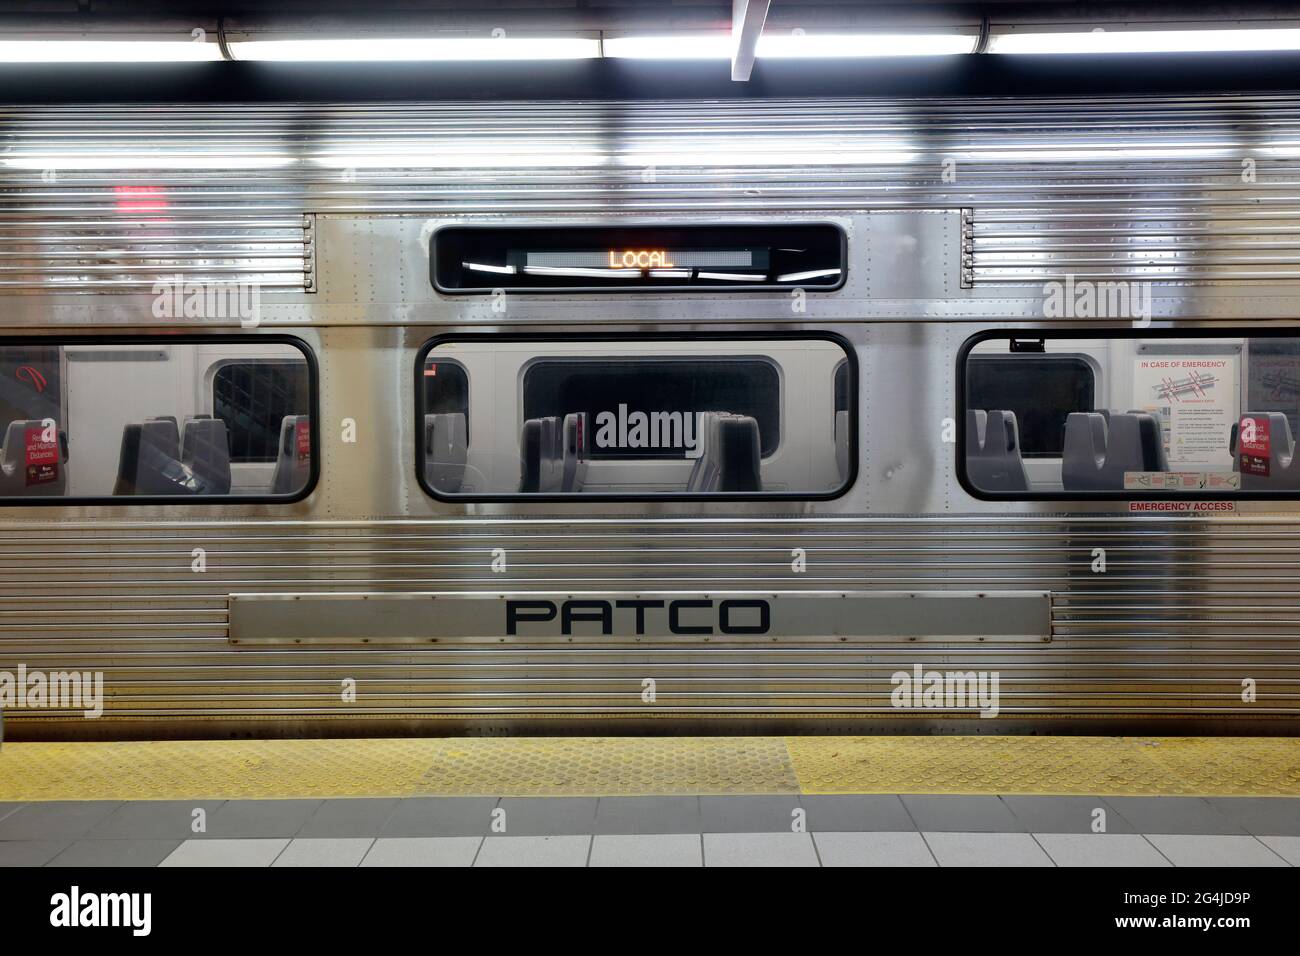 Un wagon PATCO (Port Authority Transit Corporation) dans une station de métro de Philadelphie. Banque D'Images